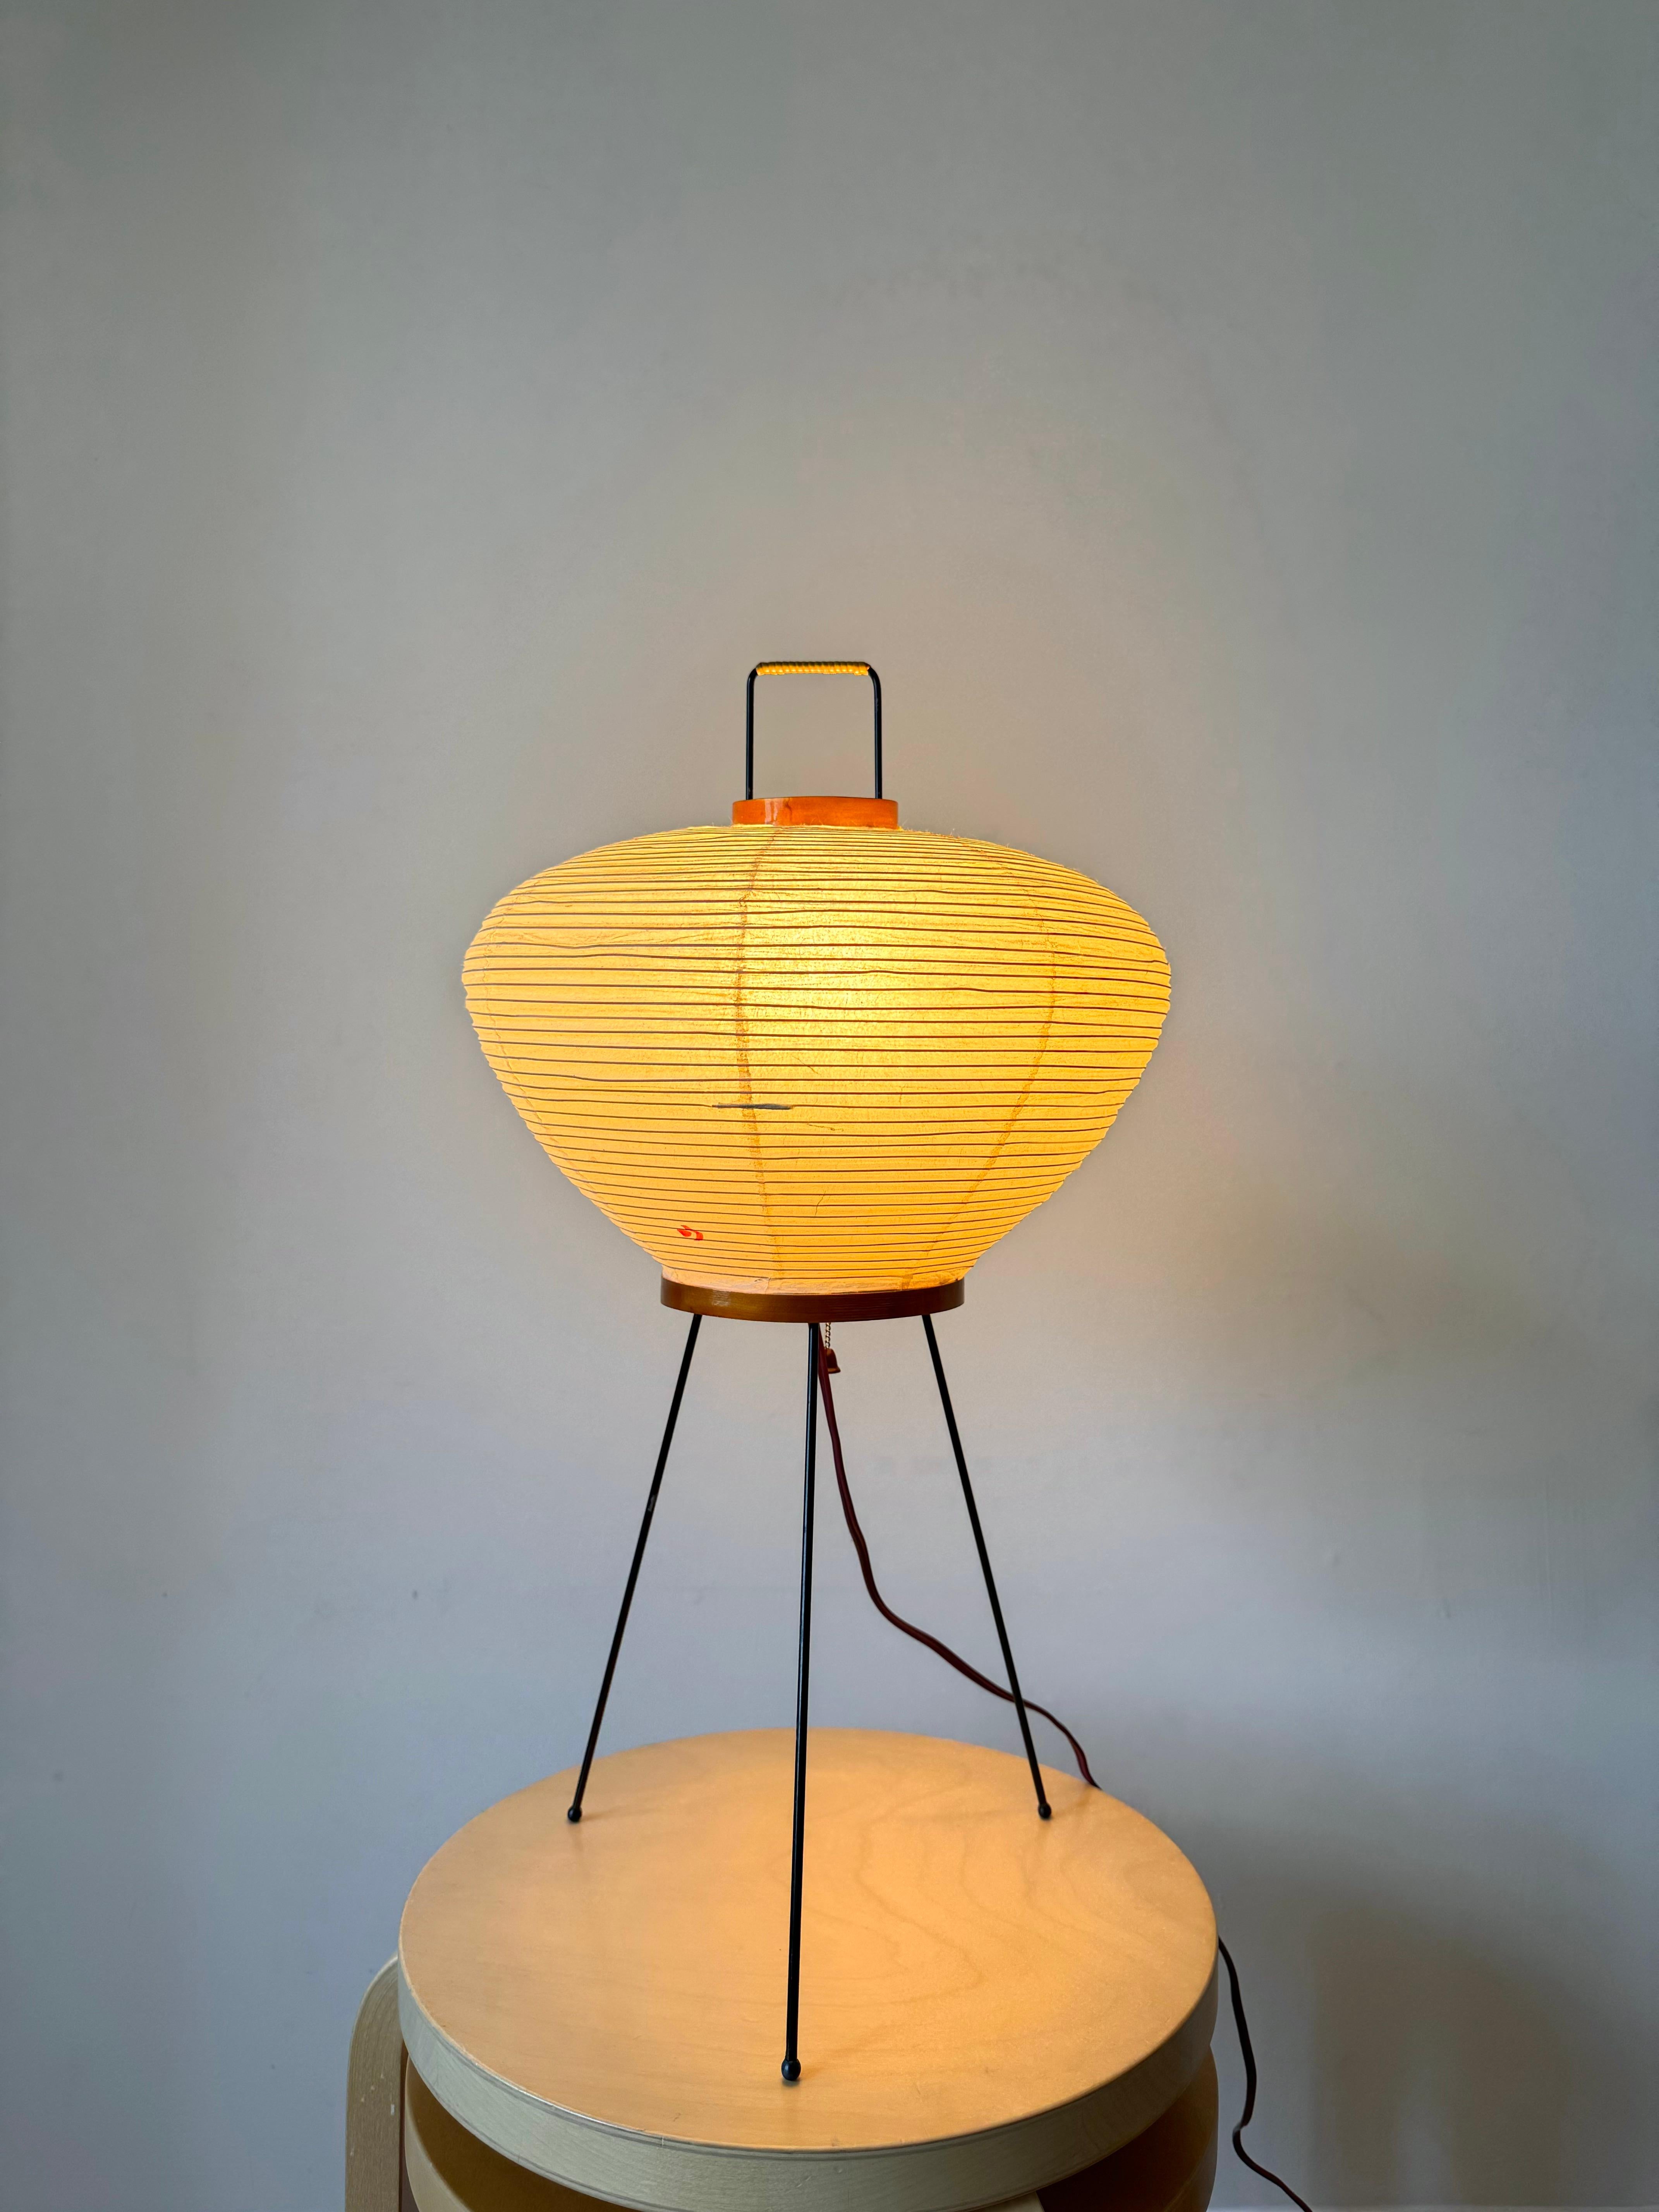 Die Akari-Lichtskulpturen von Isamu Noguchi gelten als Ikonen des modernen Designs der 1950er Jahre. Die 1951 von Noguchi entworfenen und seit einem halben Jahrhundert vom Originalhersteller in Gifu, Japan, handgefertigten Papierlaternen sind eine